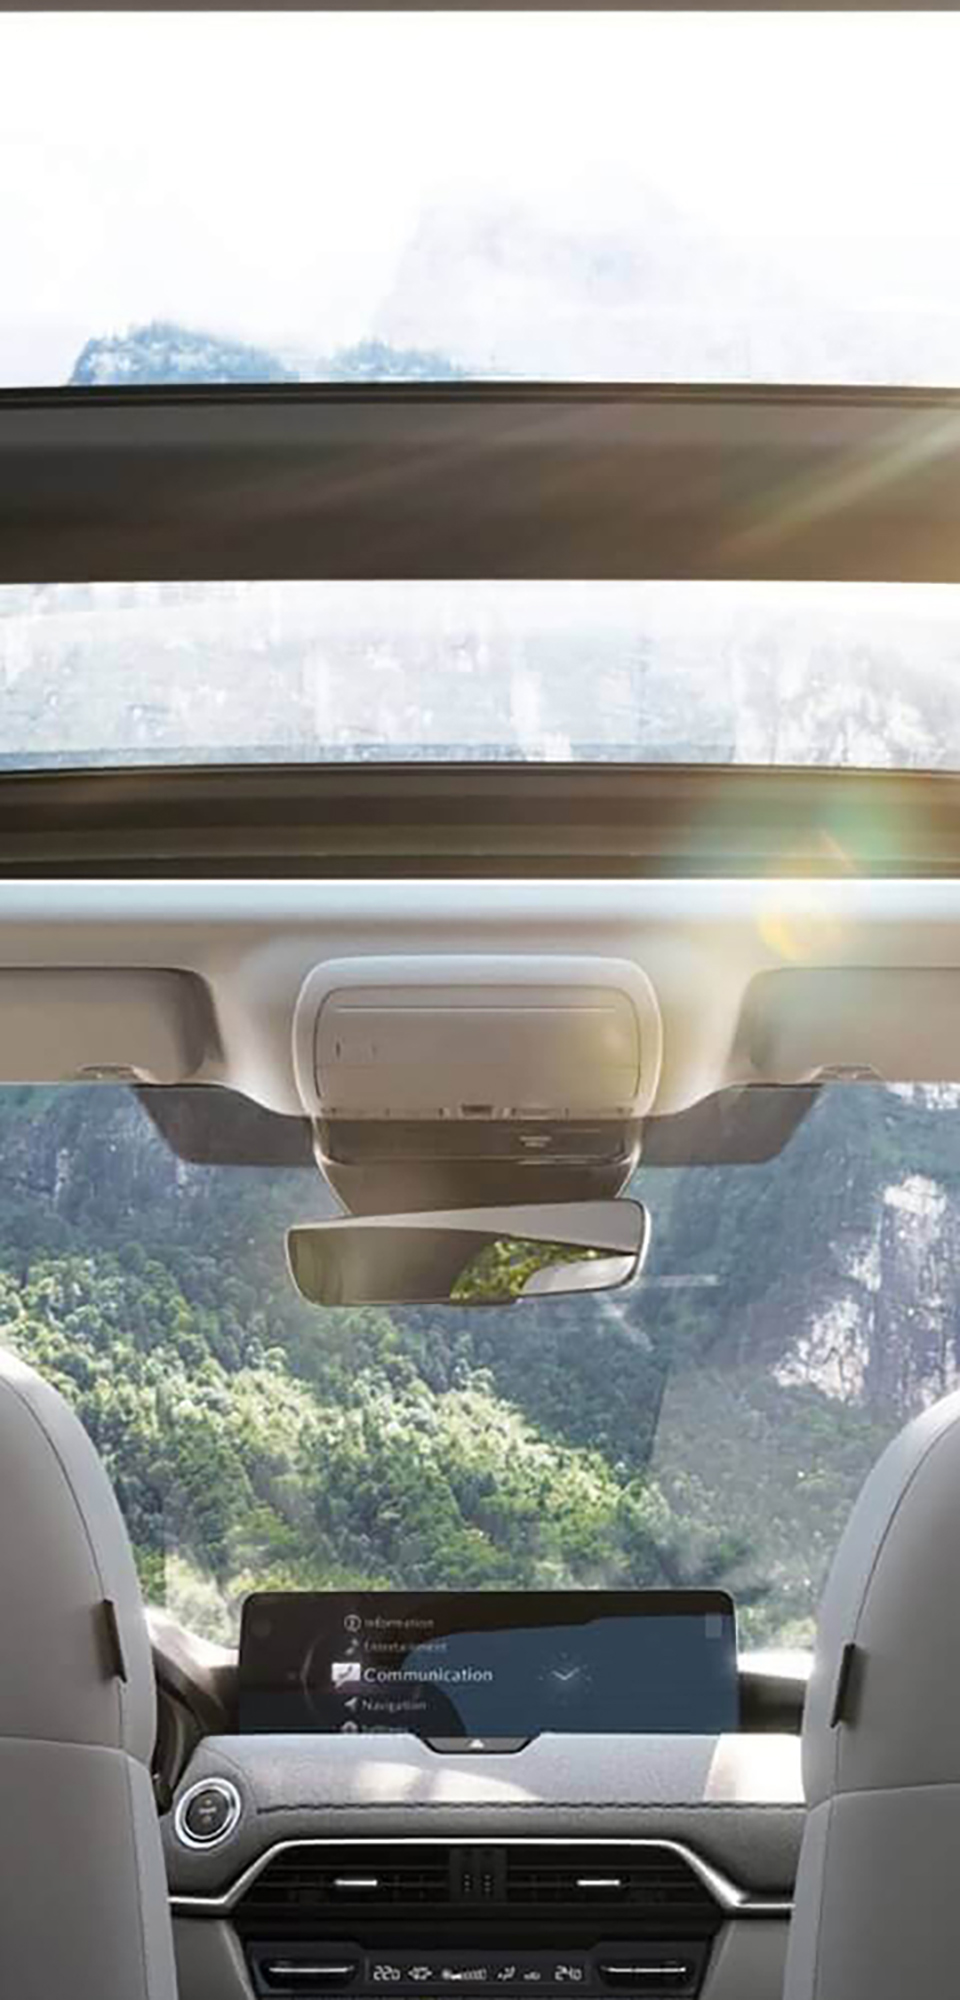 Das grosszügige Interieur des neuen Mazda CX-60 Plug-in-Hybrid-SUVs mit dem Panorama-Dachfenster.